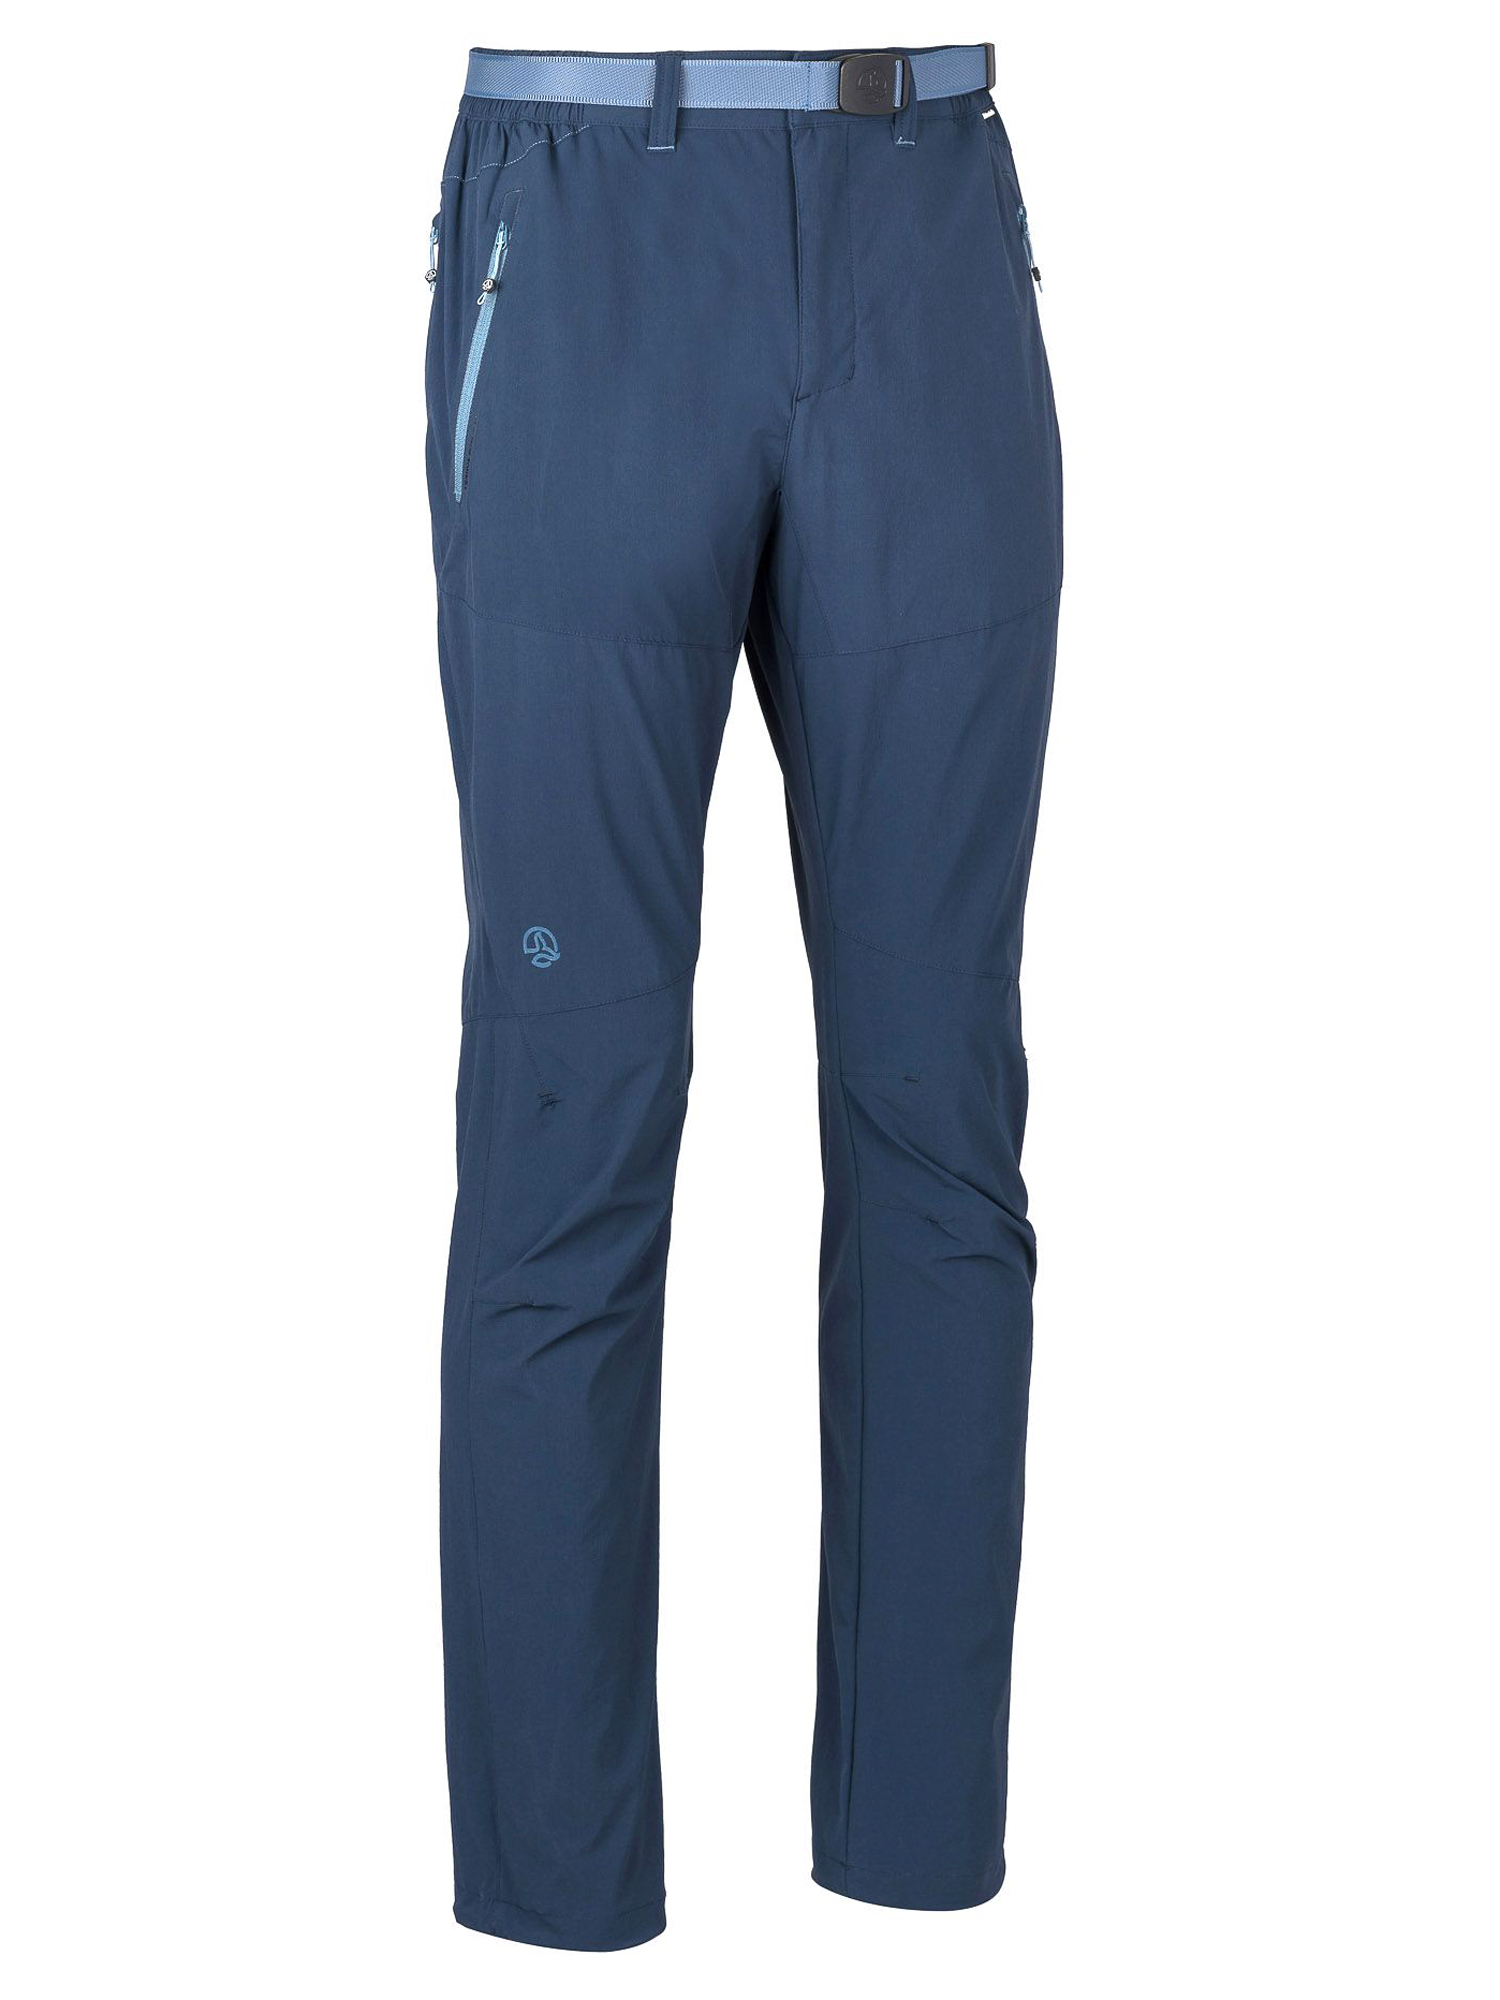 Спортивные брюки мужские Ternua Friz Pt M синие XL